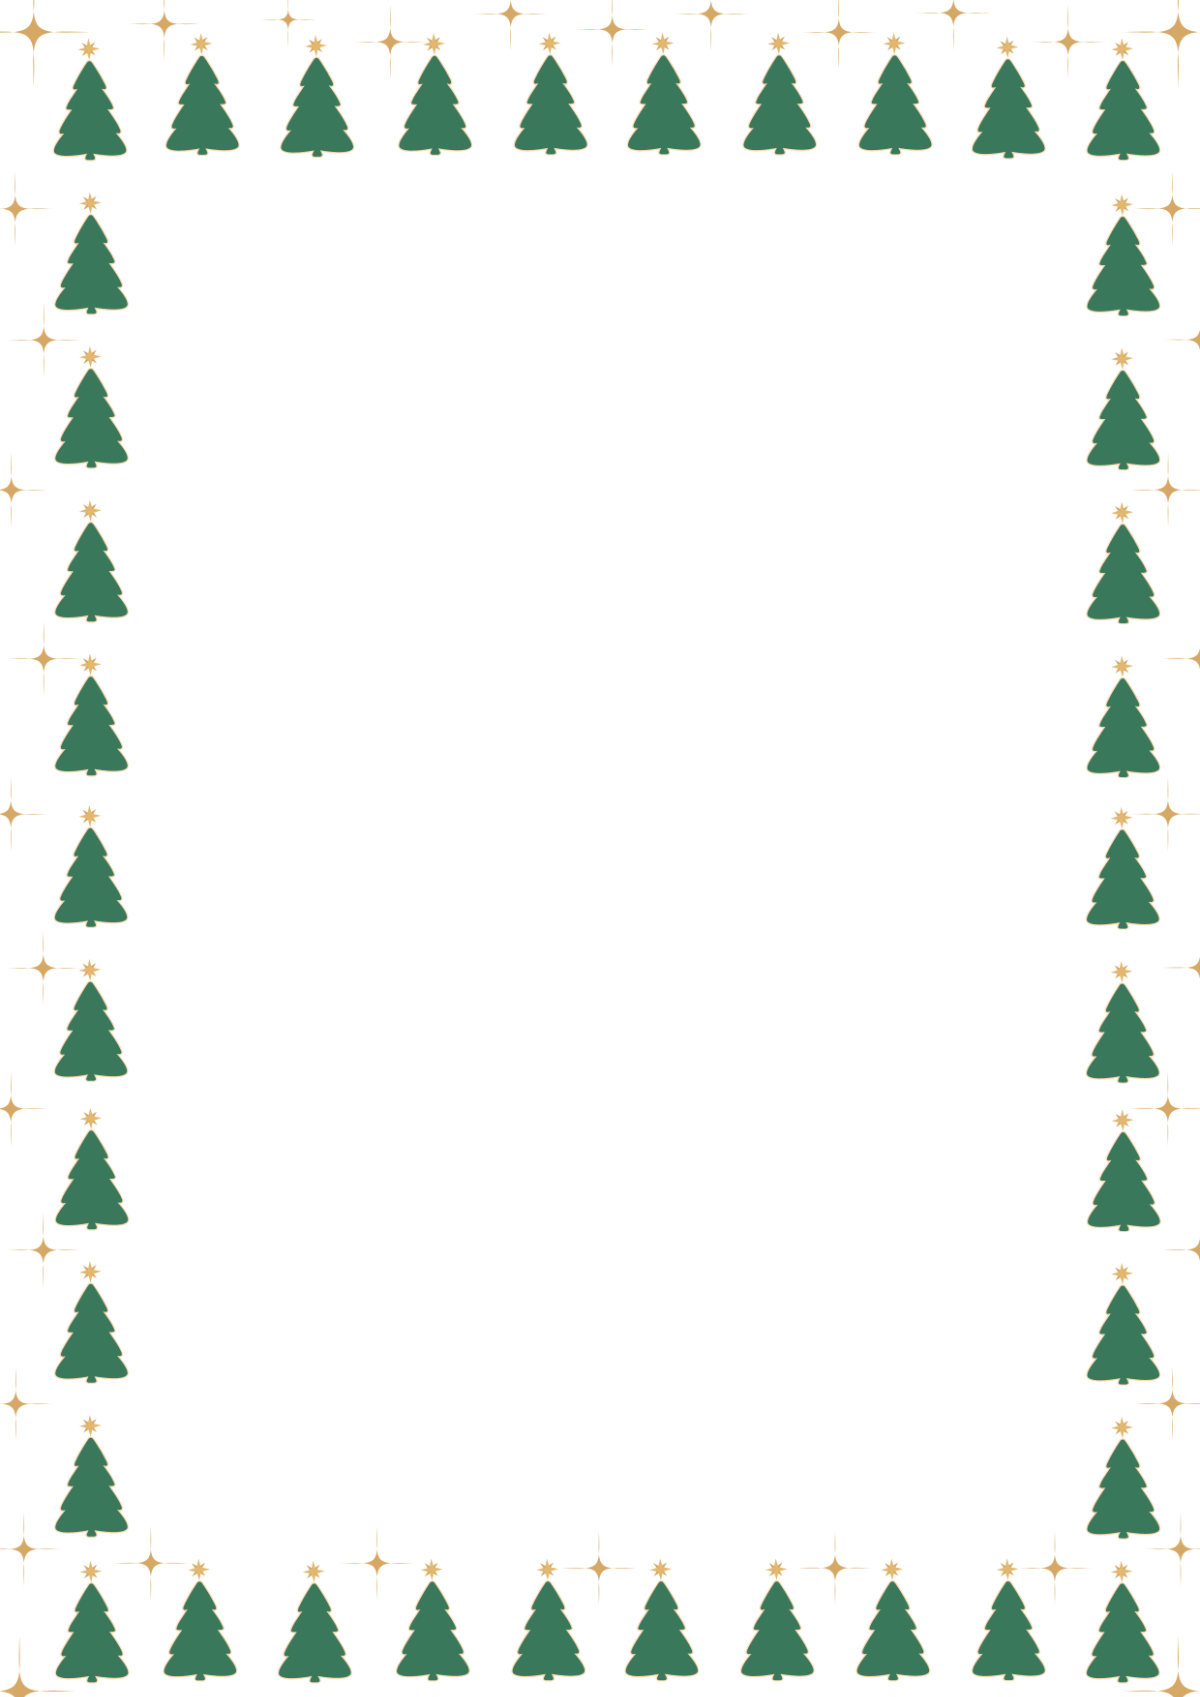 Editable Christmas Tree Border Template